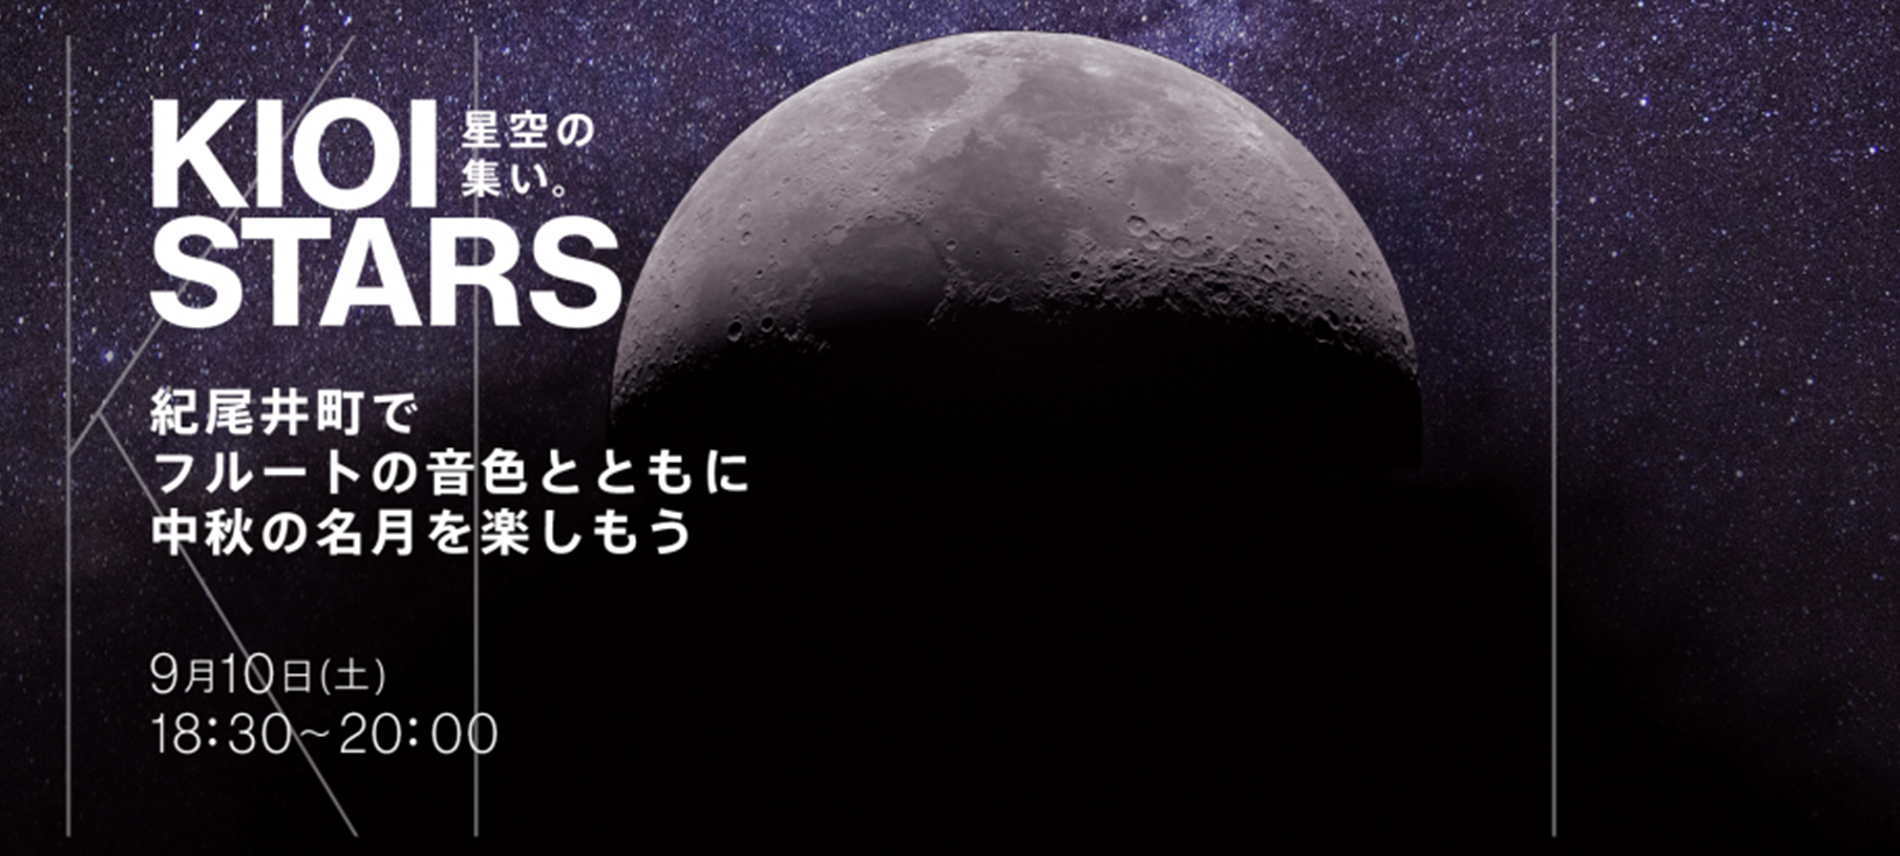 KIOI STARS 星空の集い。ー紀尾井町でフルートの音色とともに中秋の名月を楽しもうー